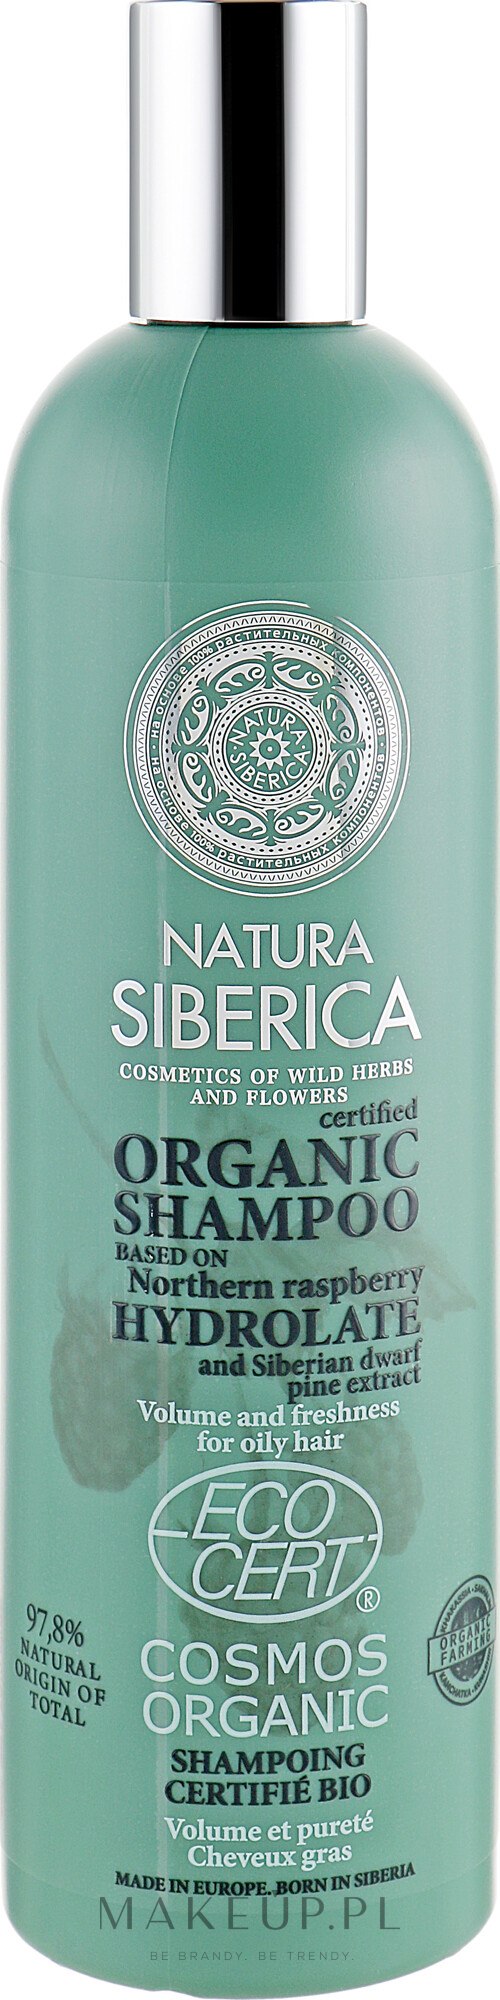 natura siberica szampon do wlosow tlustych